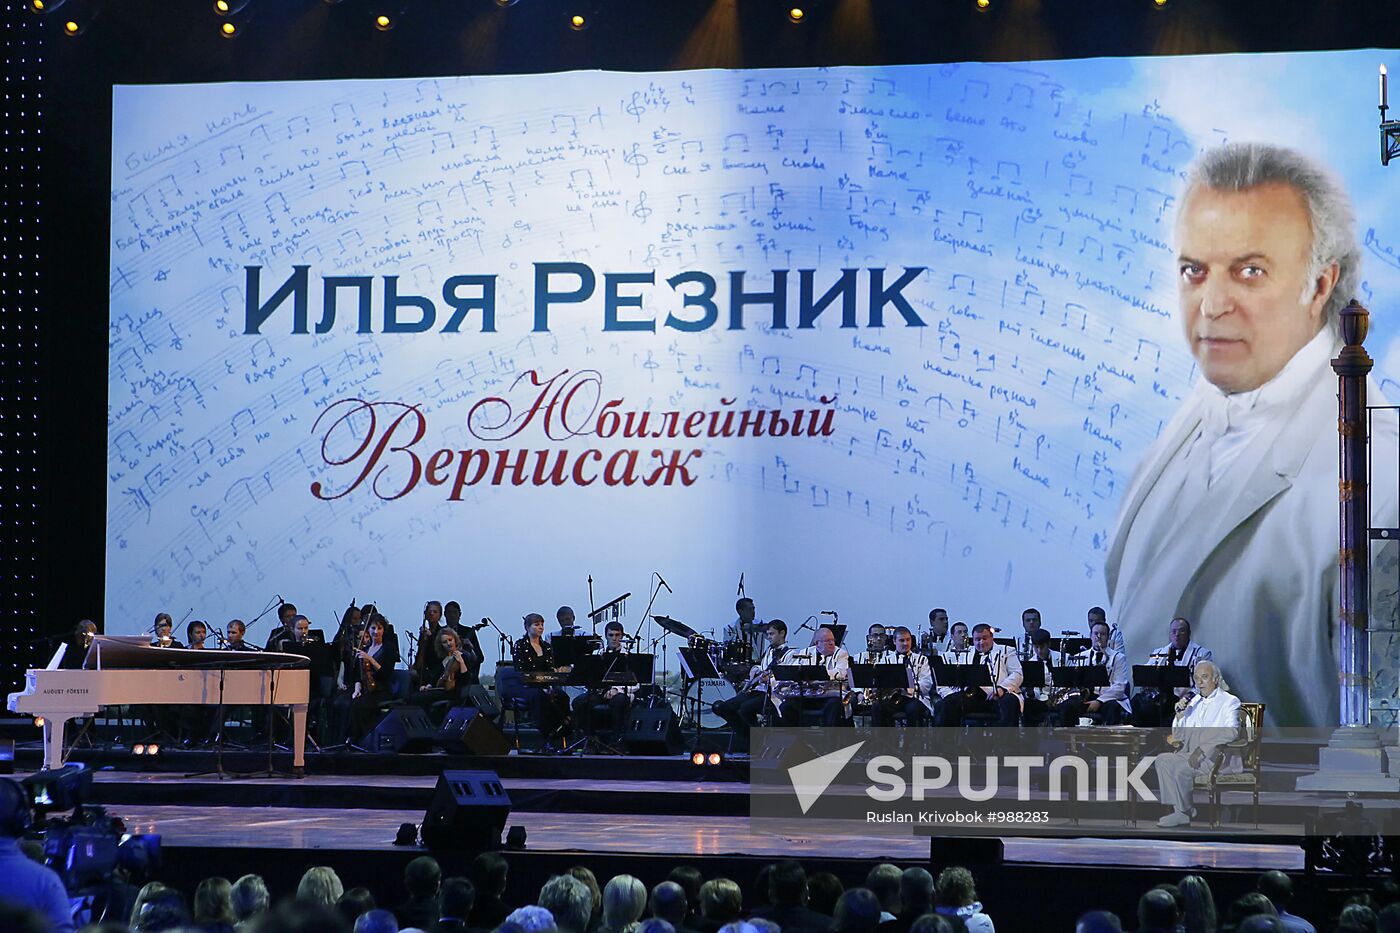 "Jubilee Vernissage" concert of poet Ilya Reznik